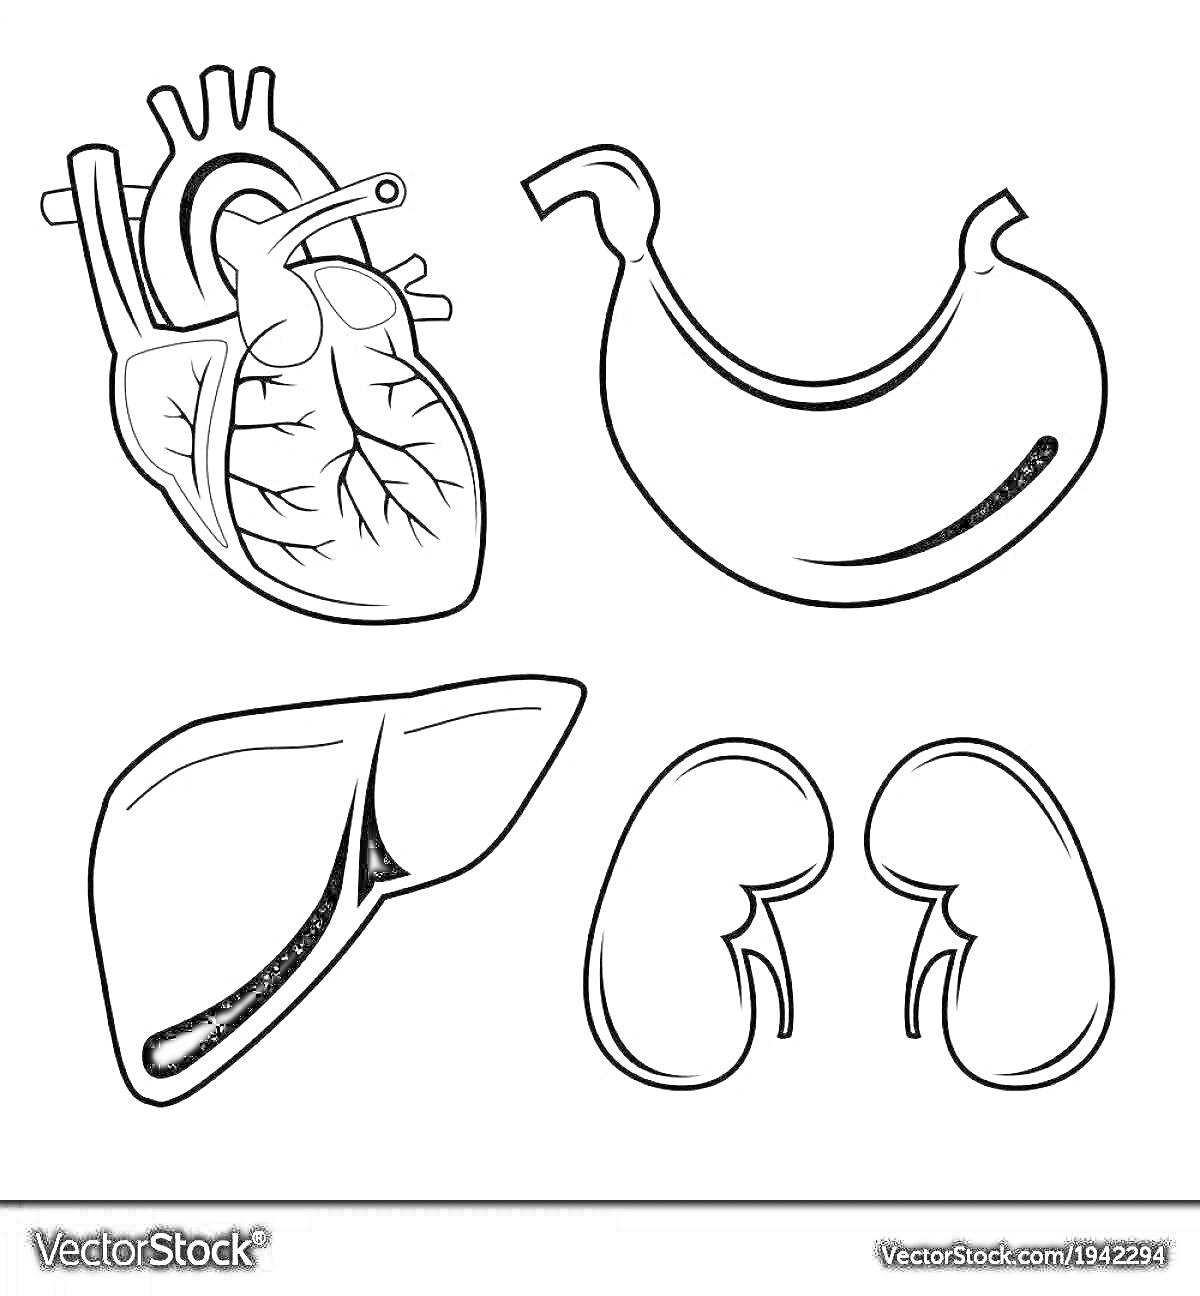 Раскраска Сердце, желудок, печень и почки - органы человека для детей